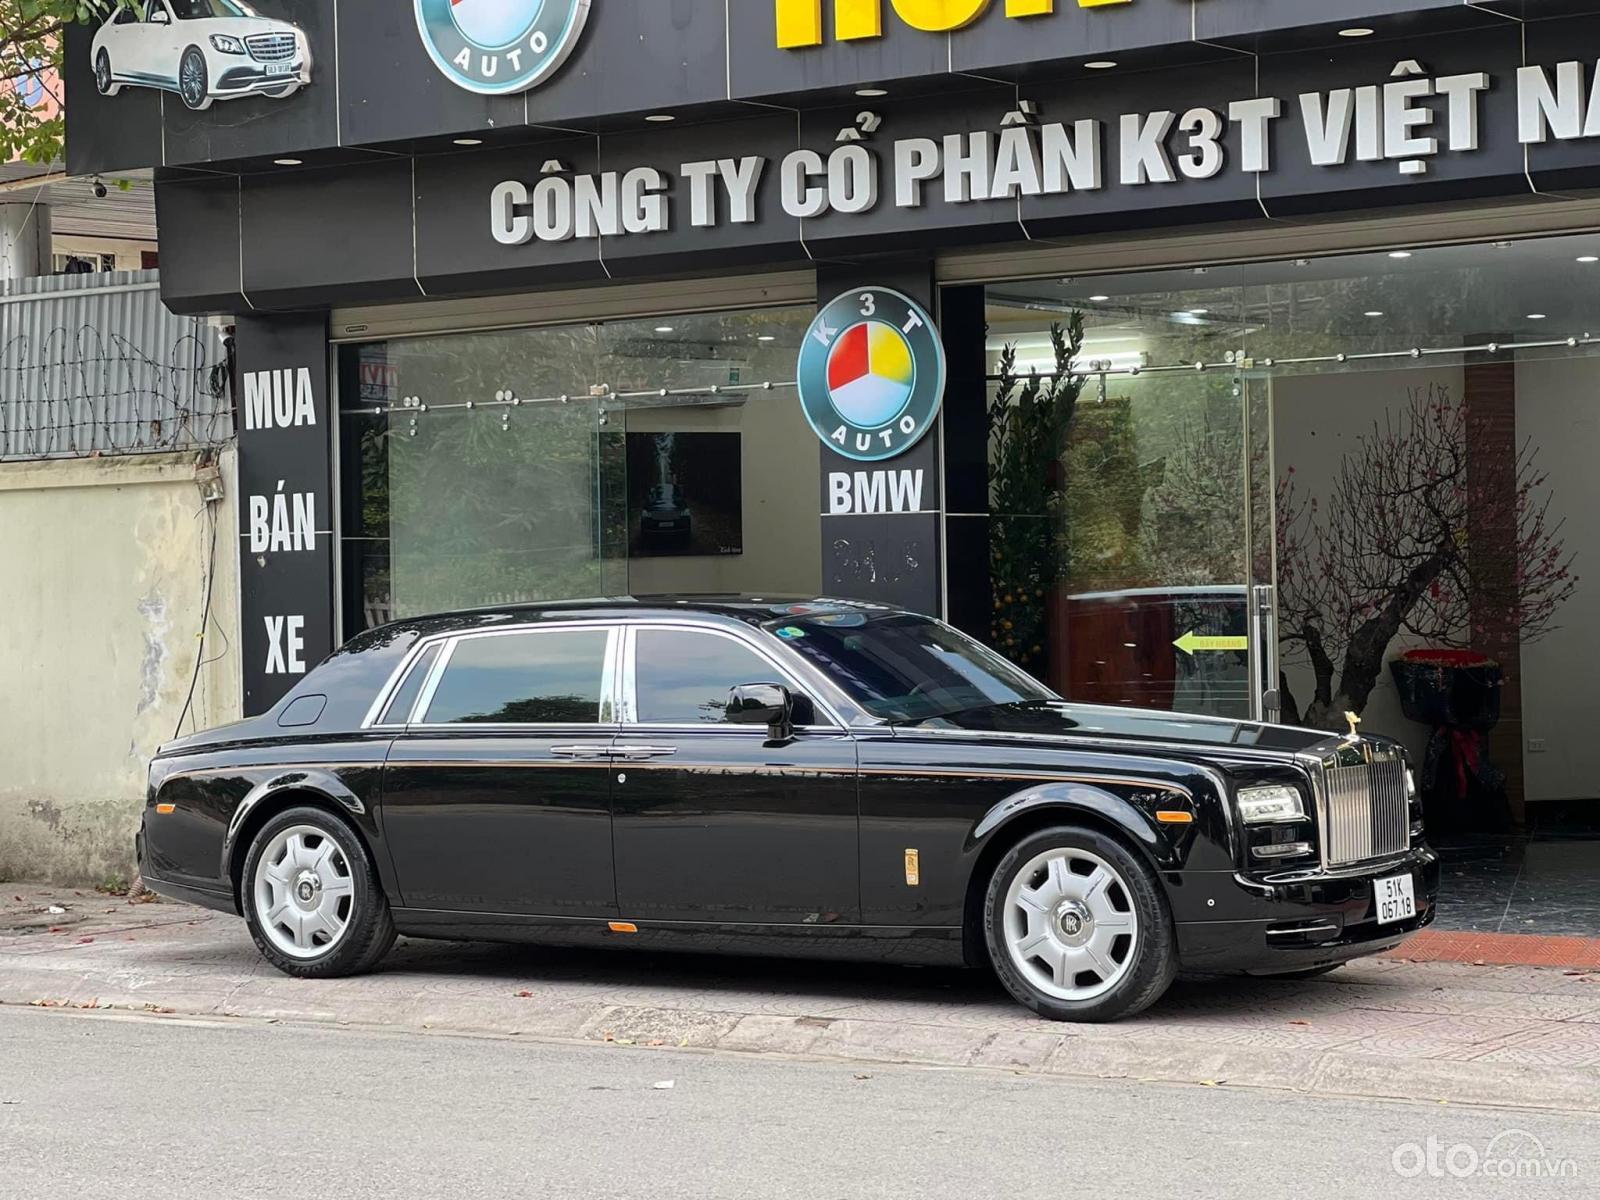 Mua bán xe Rolls Royce Phantom 2015 màu trắng 072023  Bonbanhcom